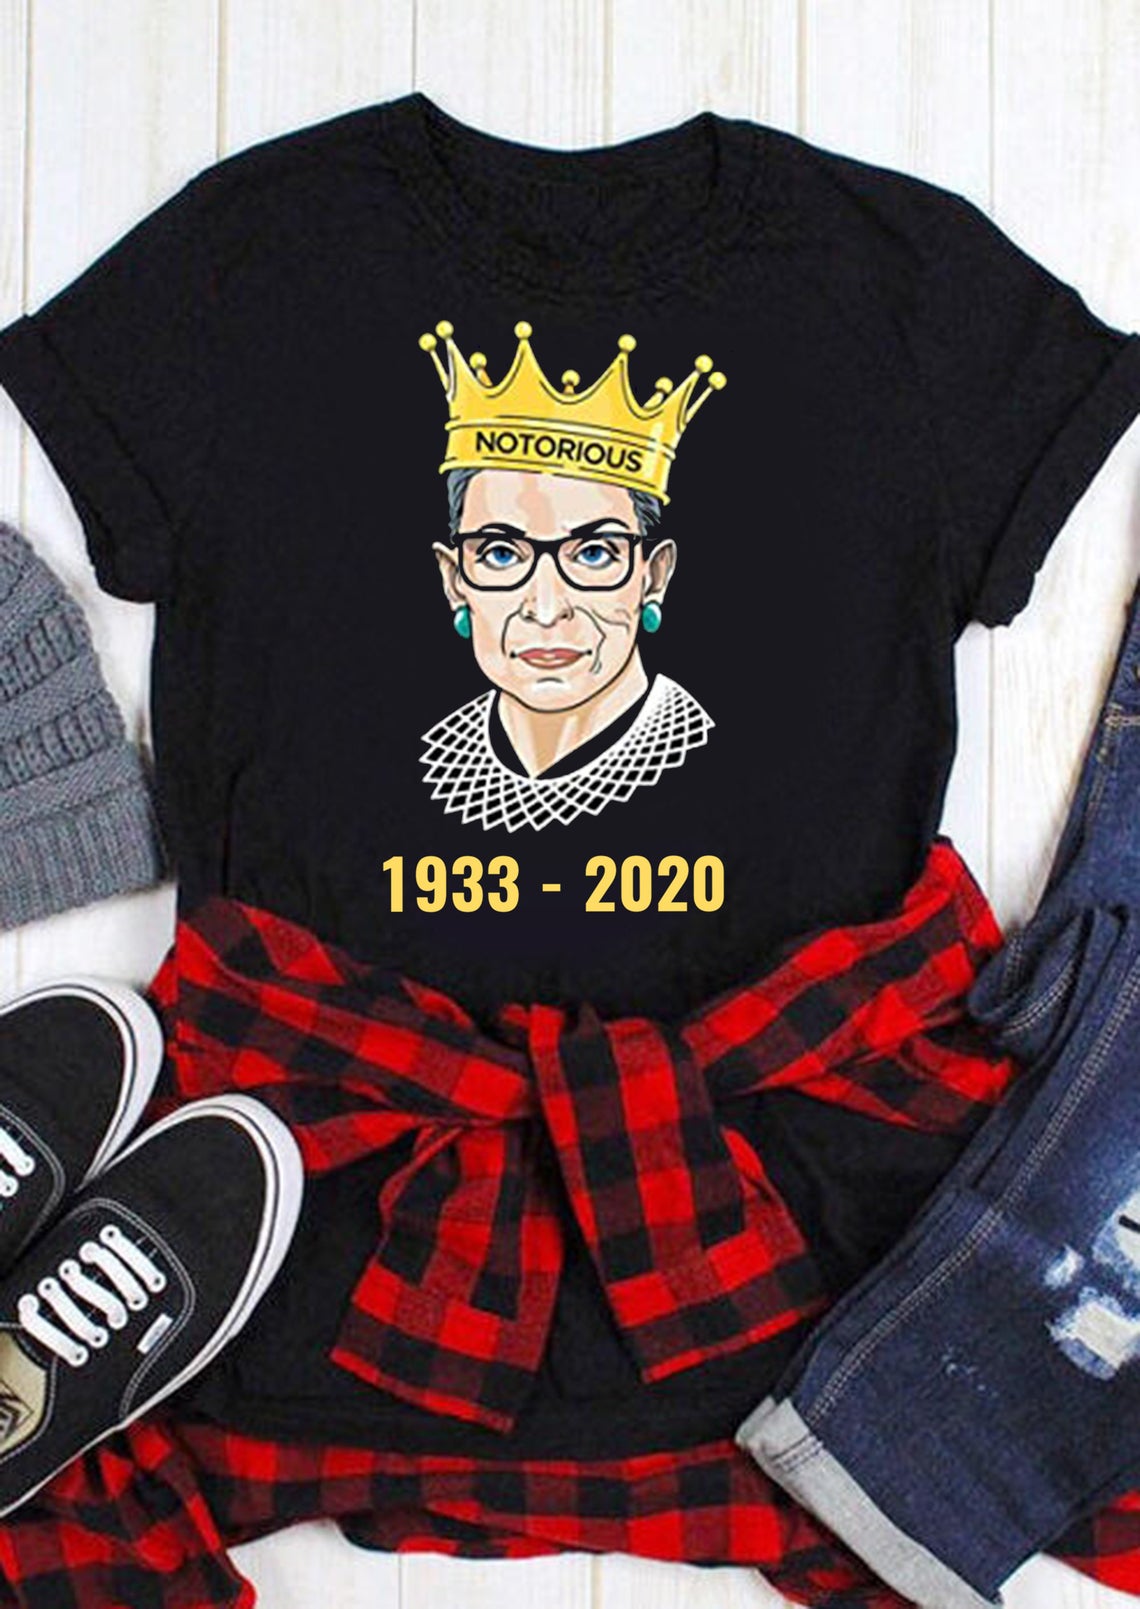 Rbg Rip Ruth Bader Ginsburg 1933-2020 Shirt